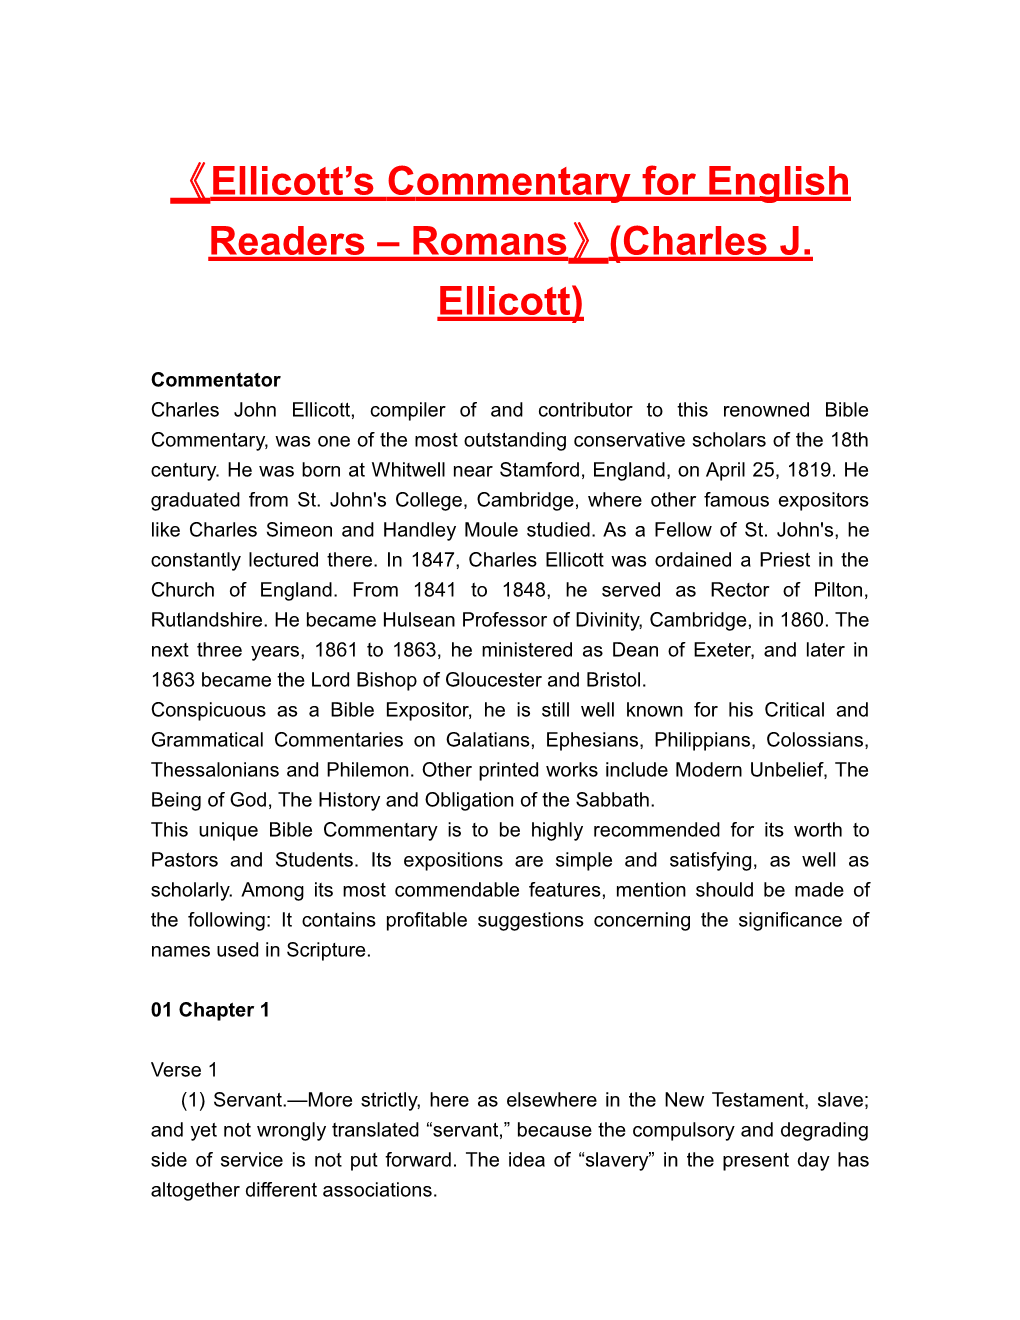 Ellicott Scommentary for English Readers Romans (Charles J. Ellicott)